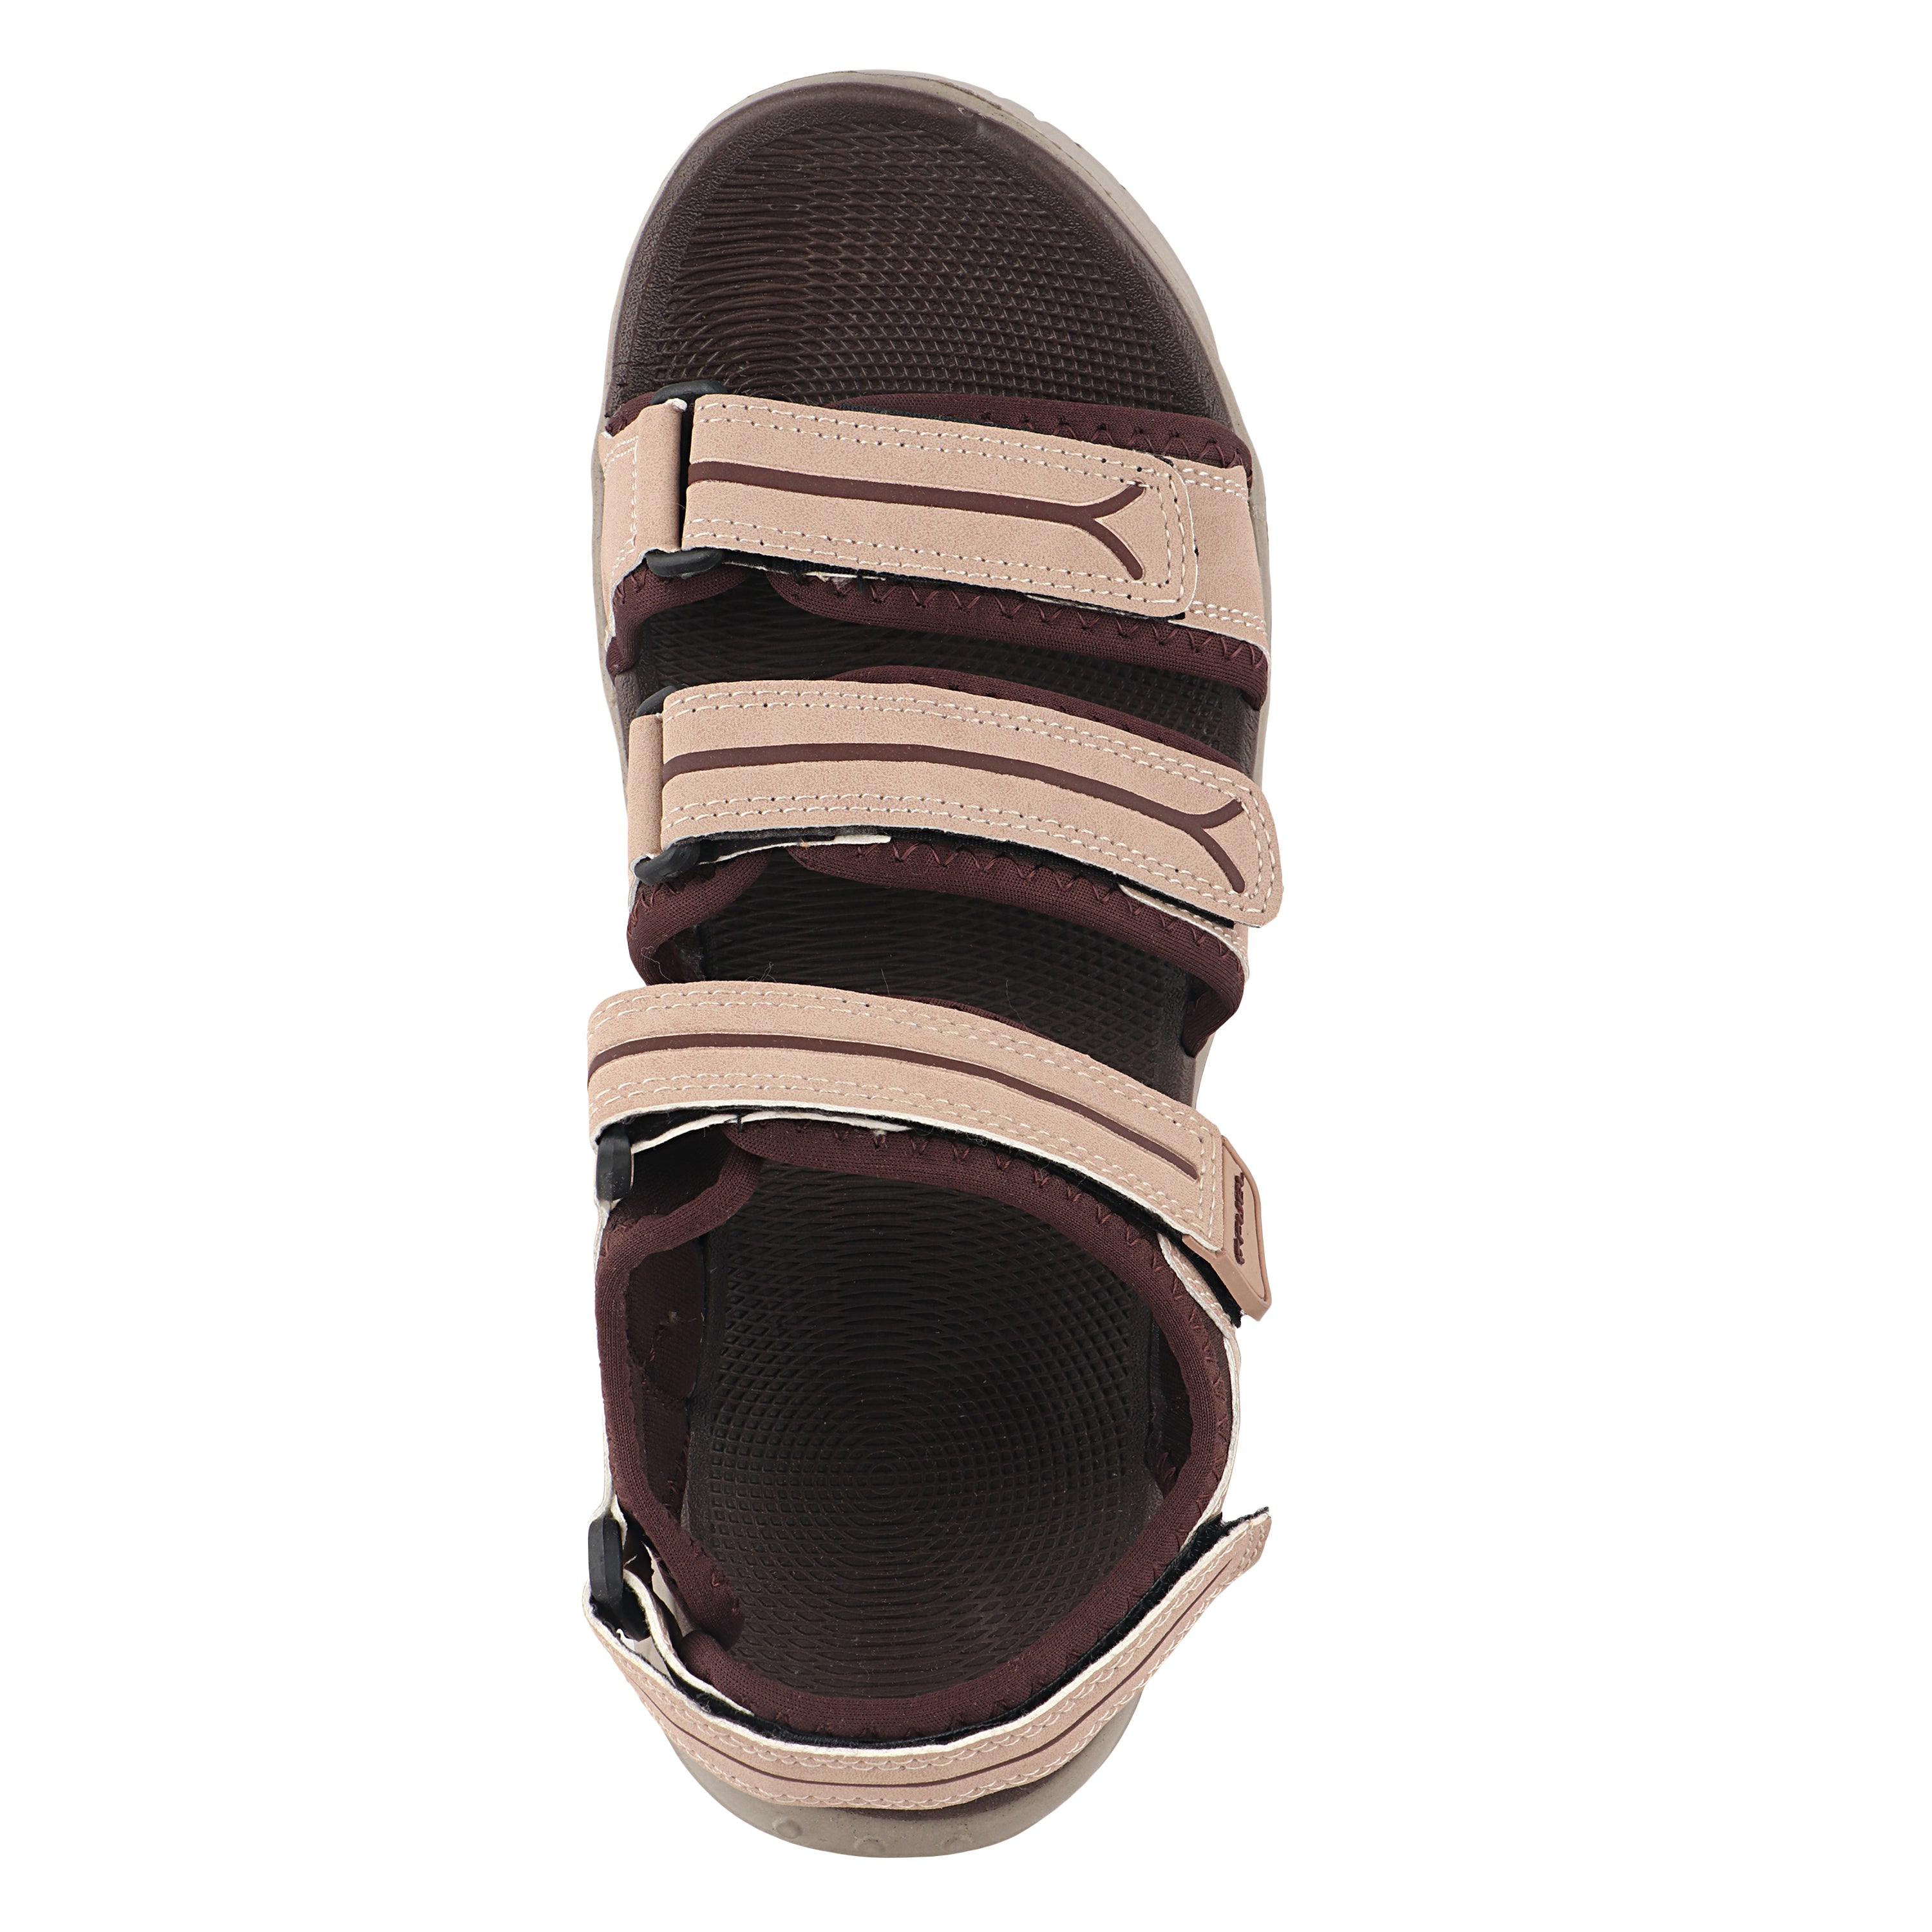 Fuel Keta Sandals For Men's (Onion-Brown)